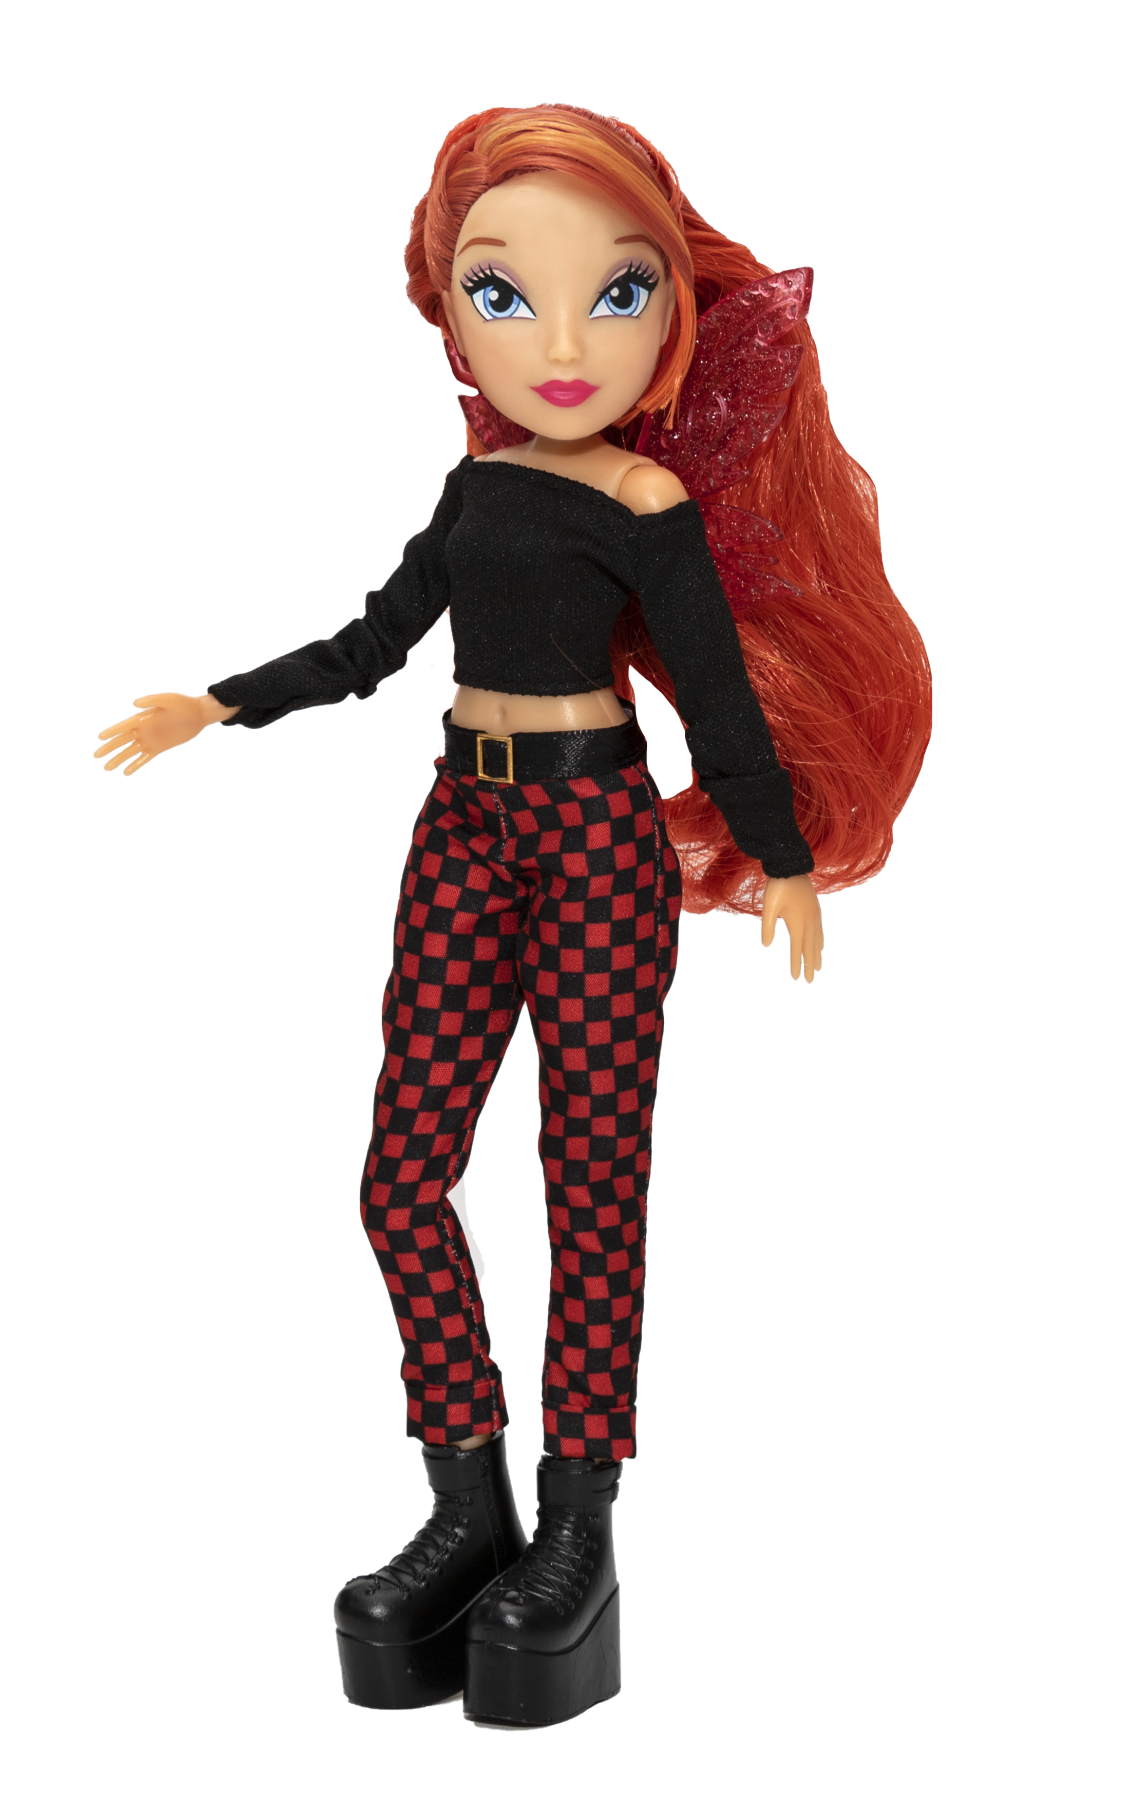 Winx doll - bambola fashion doll personaggio bloom alta cm 23 - WINX